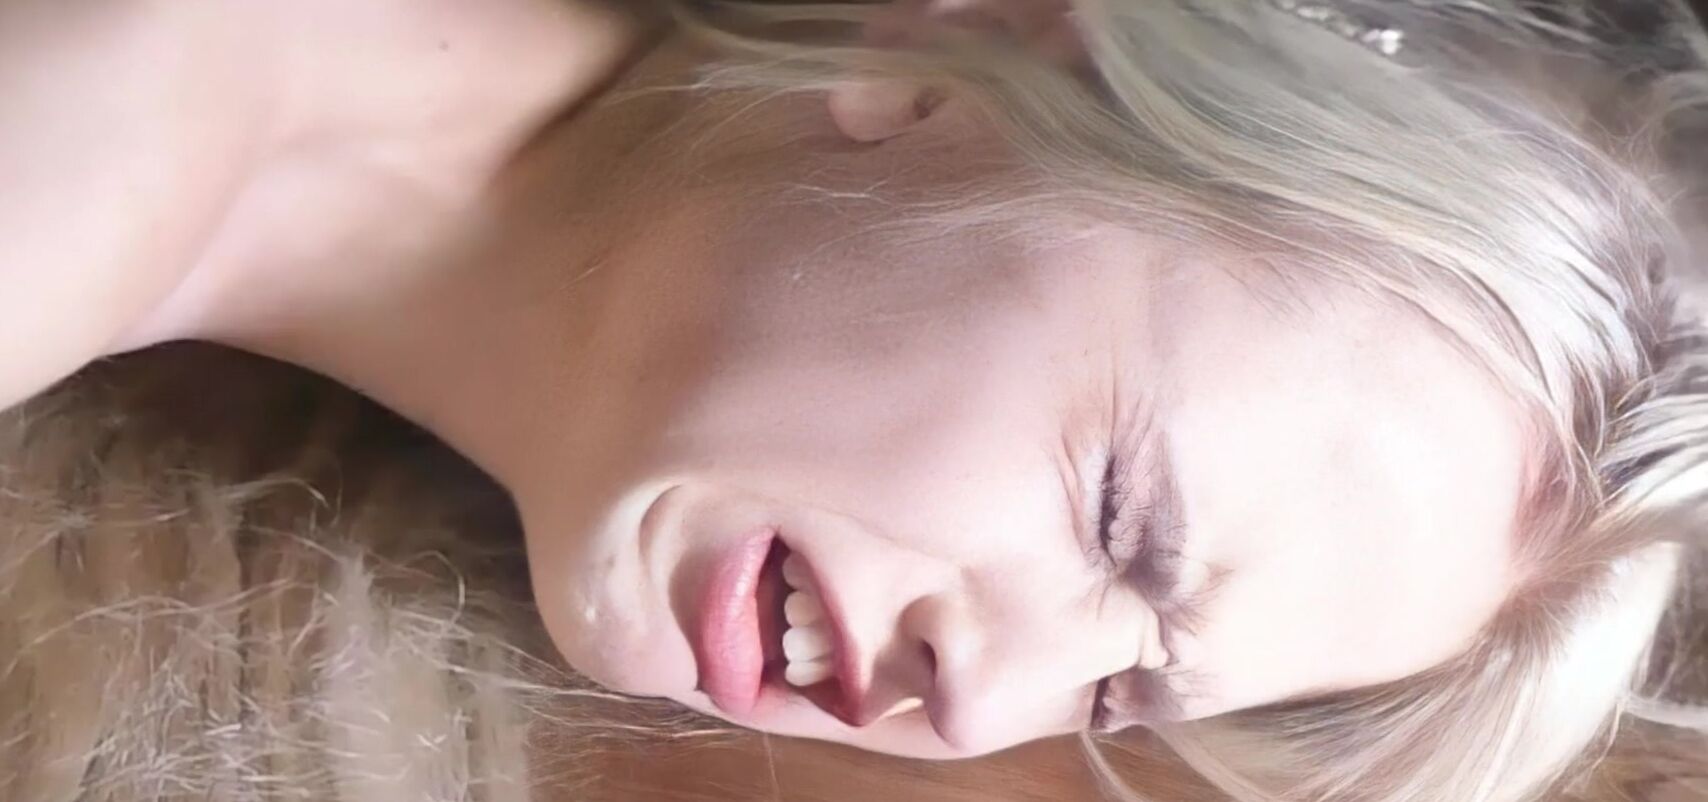 feet skewers voyeur blonde teen Sex Images Hq